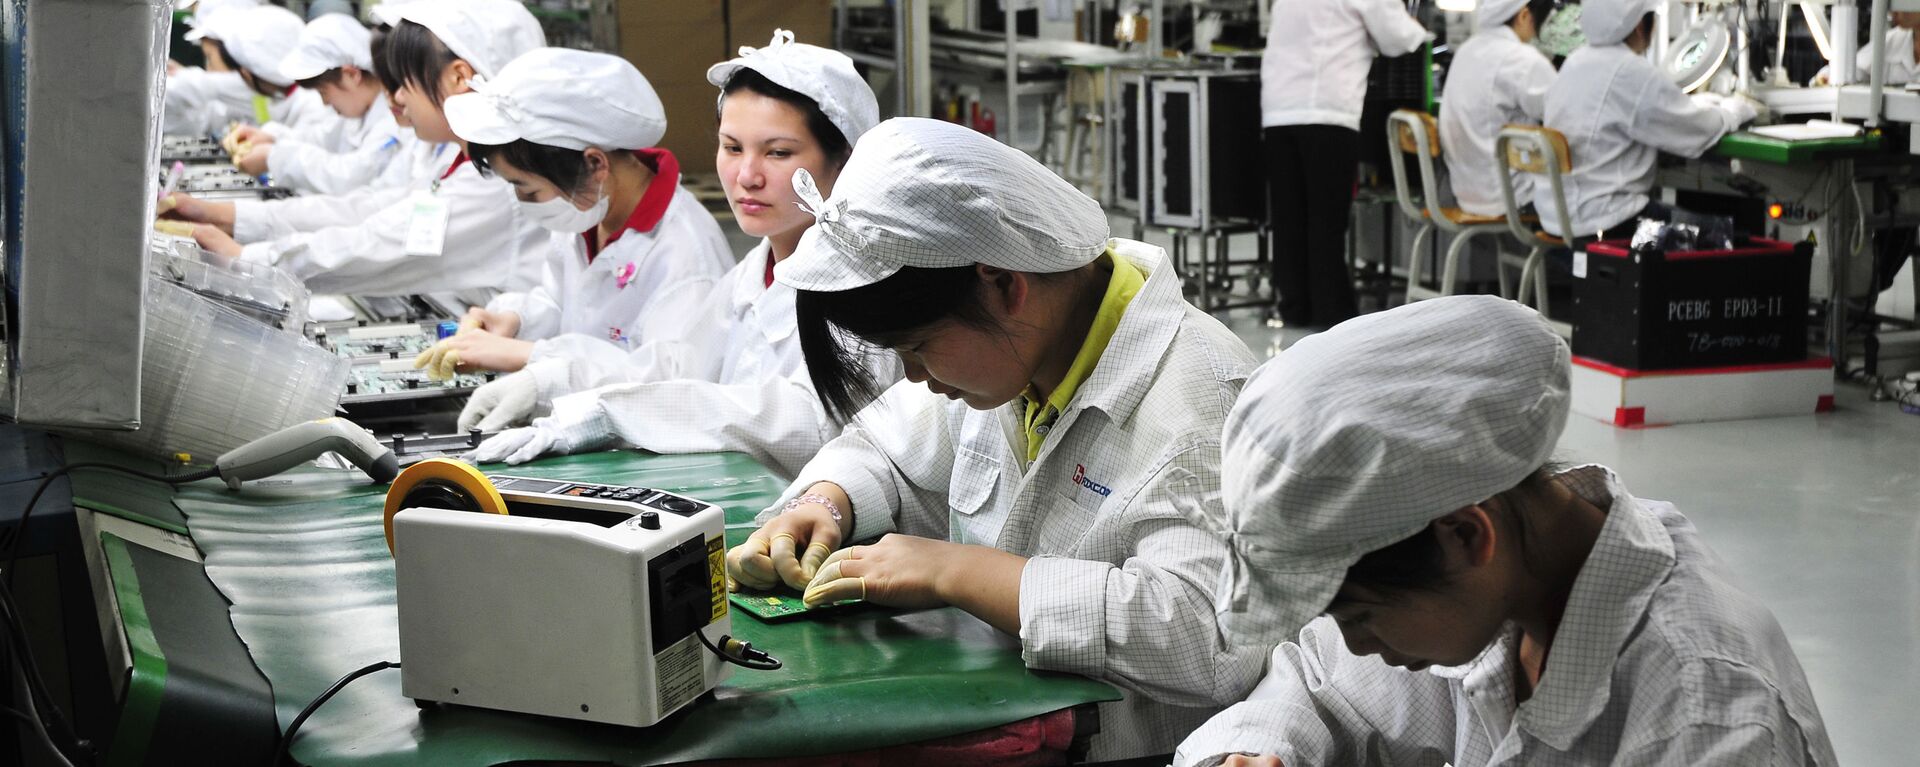 Công nhân làm việc trong phân xưởng của nhà máy Foxconn Technology Group ở Thâm Quyến, Trung Quốc - Sputnik Việt Nam, 1920, 28.05.2021